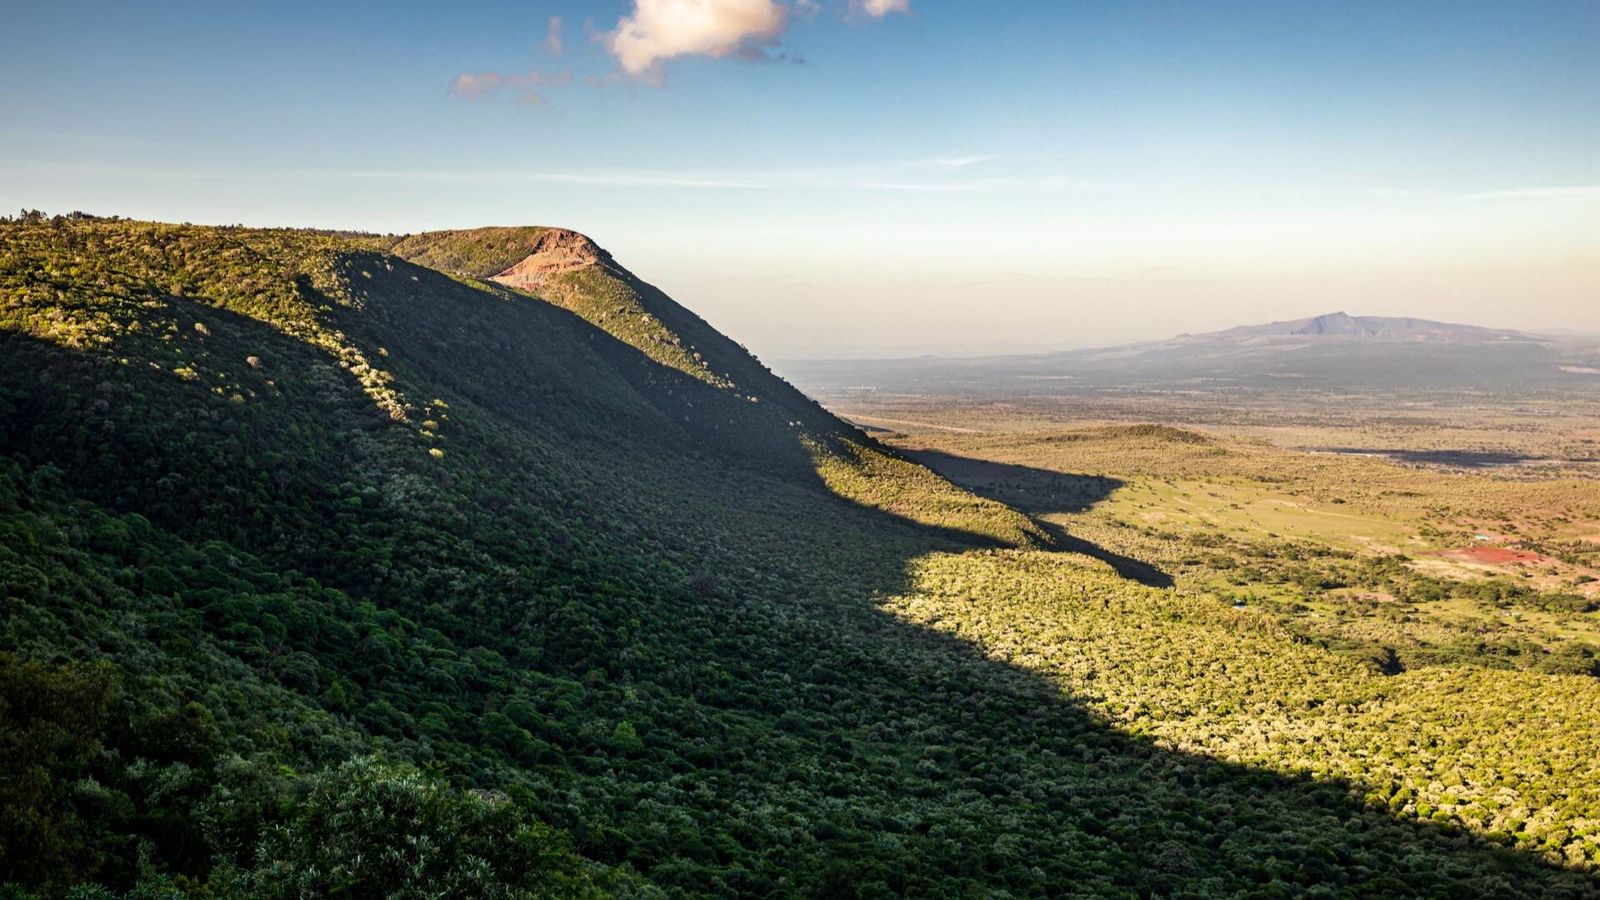 Vista del Gran Valle del Rift, que termirá partiendo África en dos. (Ninara/Creative Commons)